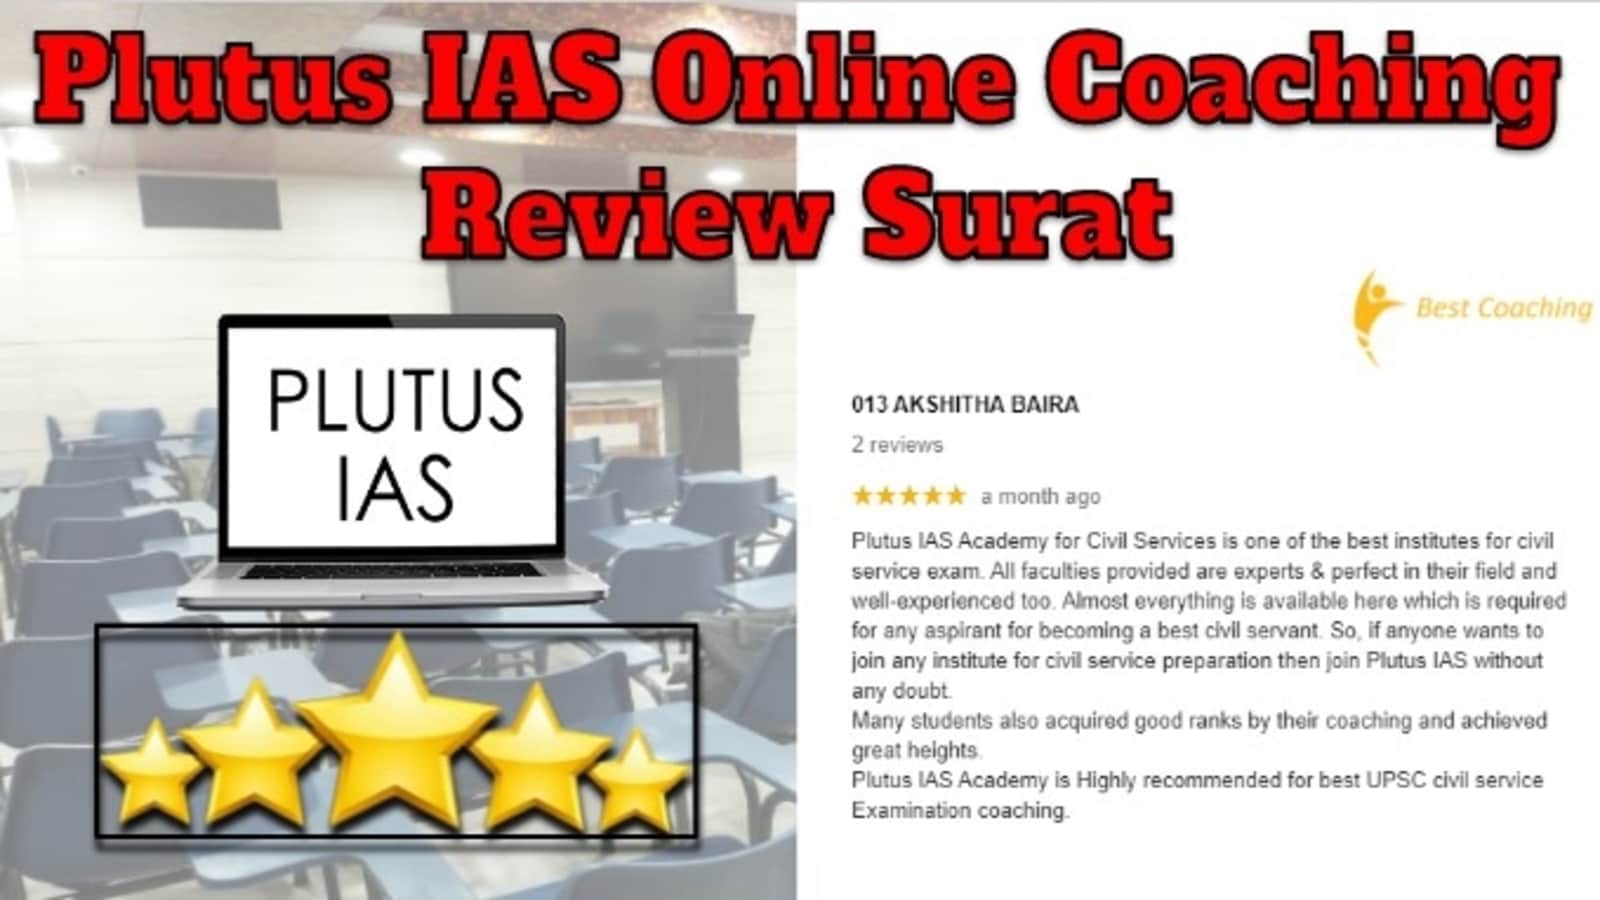 Plutus IAS Online Coaching Review Surat